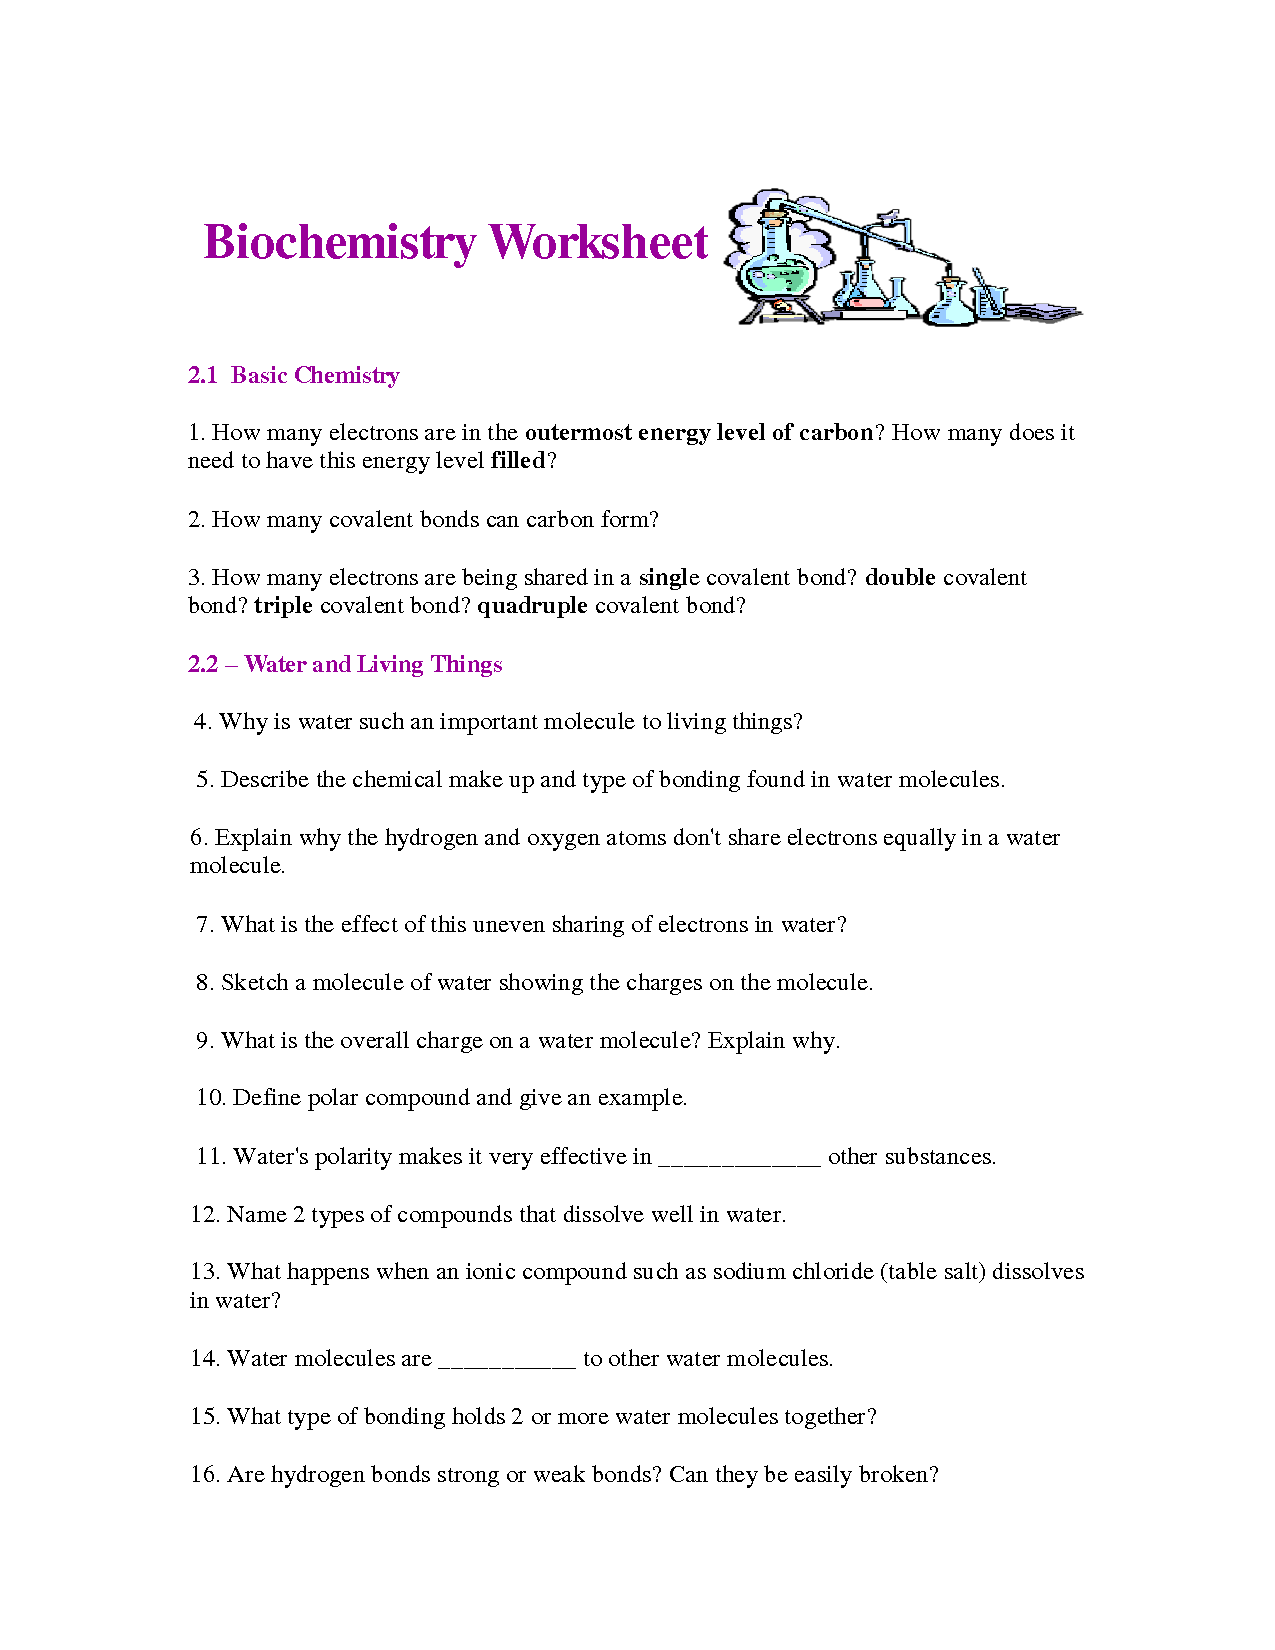 Biochemistry Basics Worksheet Answers Image